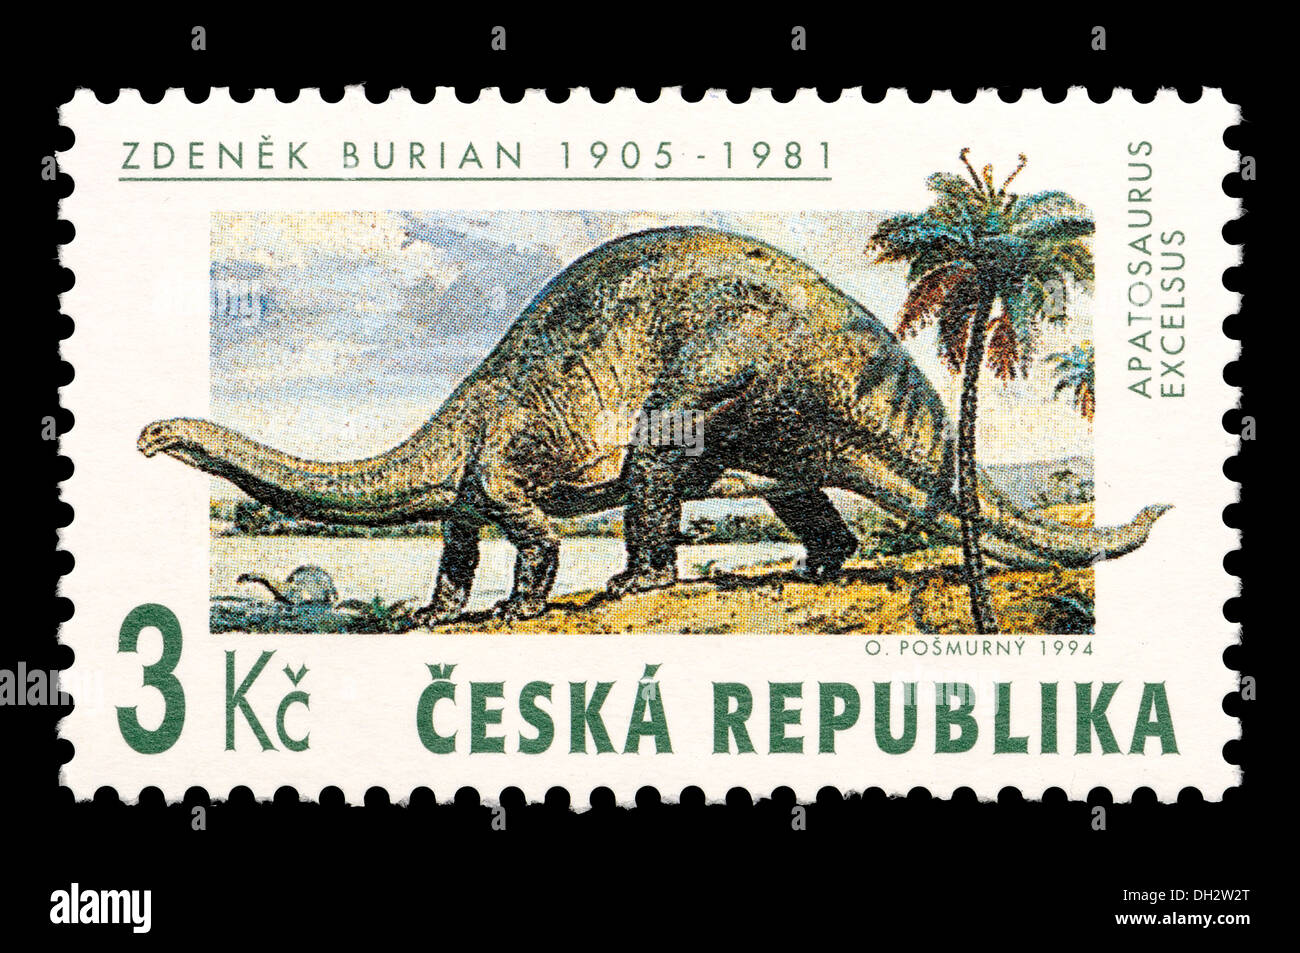 Francobollo da Repubblica ceca commemorando Zdenek Burian (1905-81; dell'artista e illustratore Foto Stock